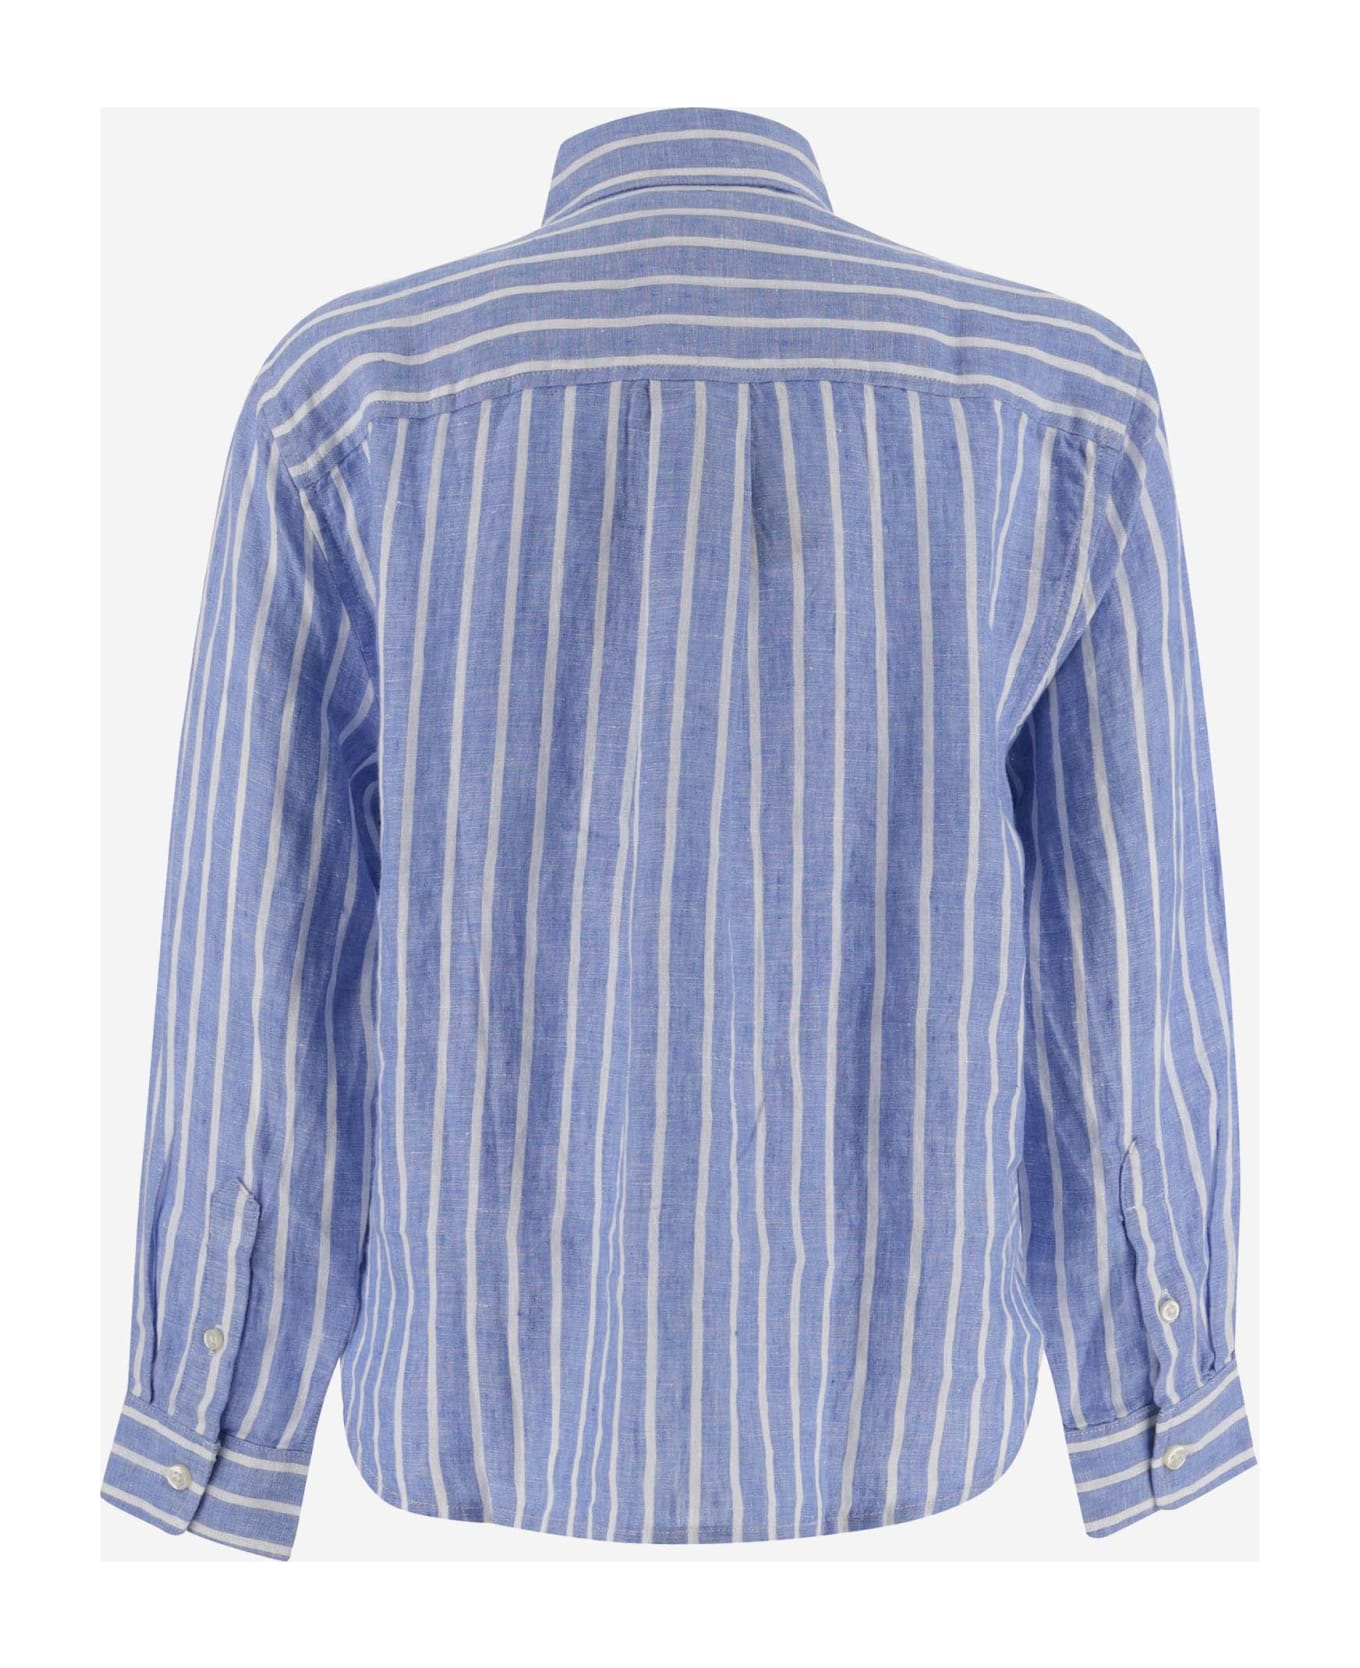 Ralph Lauren Striped Linen Shirt With Logo - LIGHT BLUE シャツ